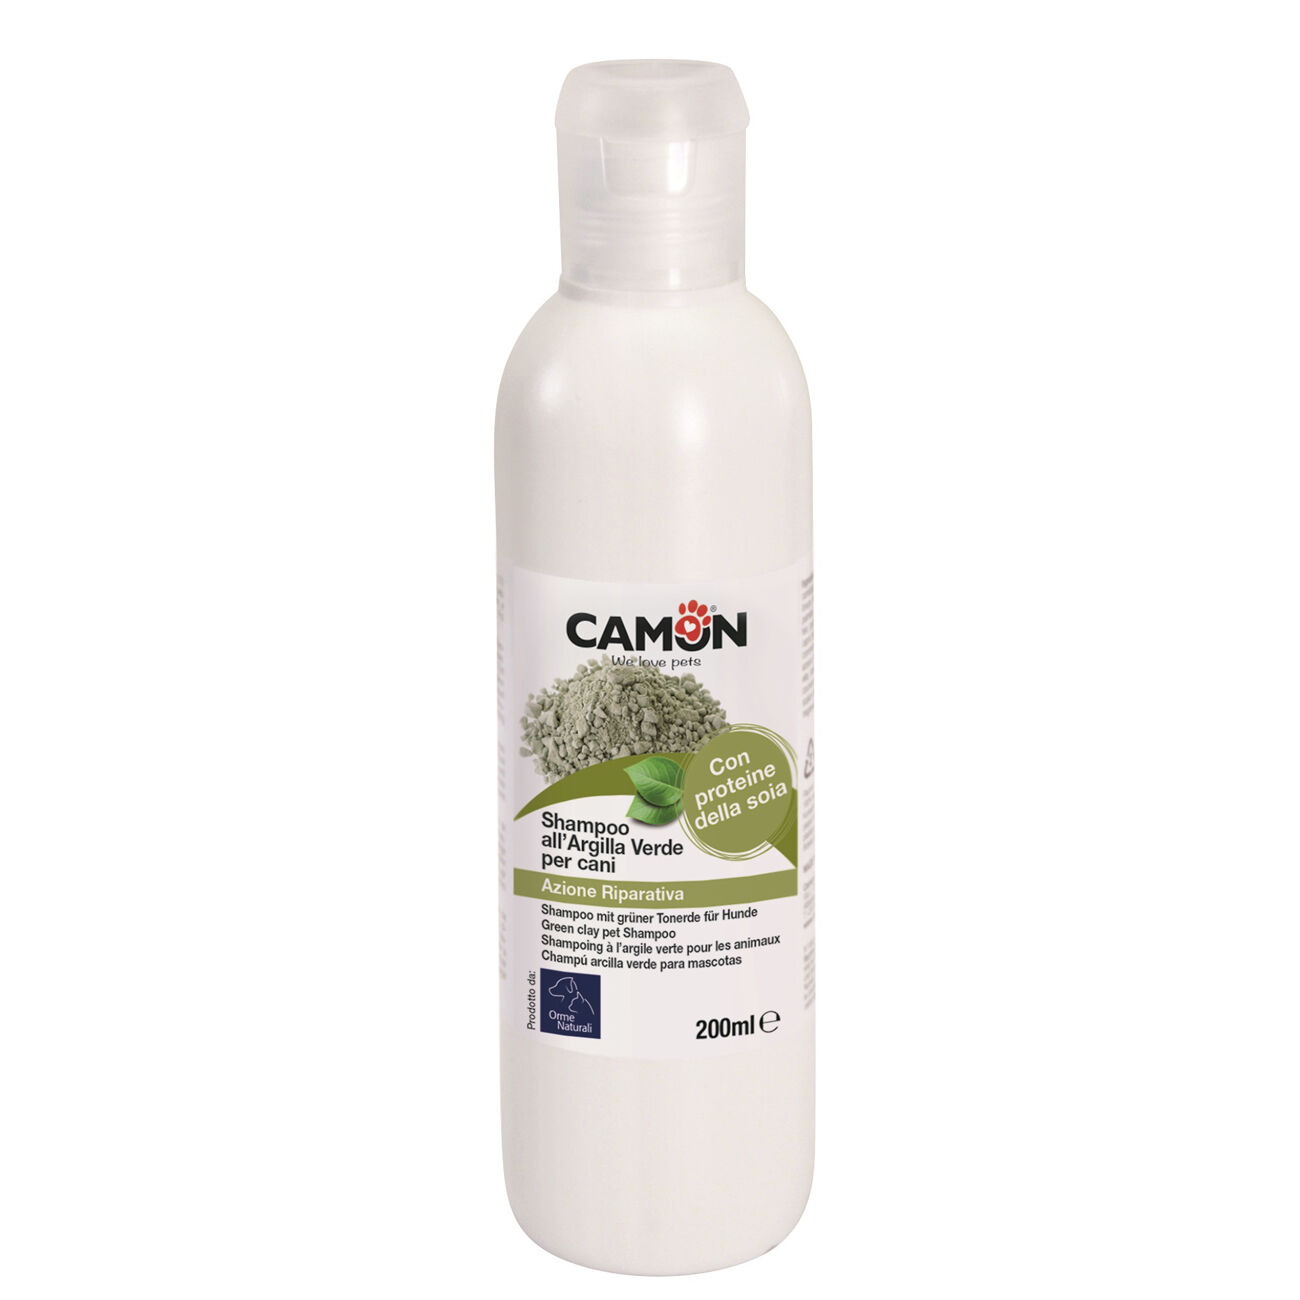 Camon-shampoo-gruen-erde-fuer-hund-online-kaufen-200ml-CO-G800